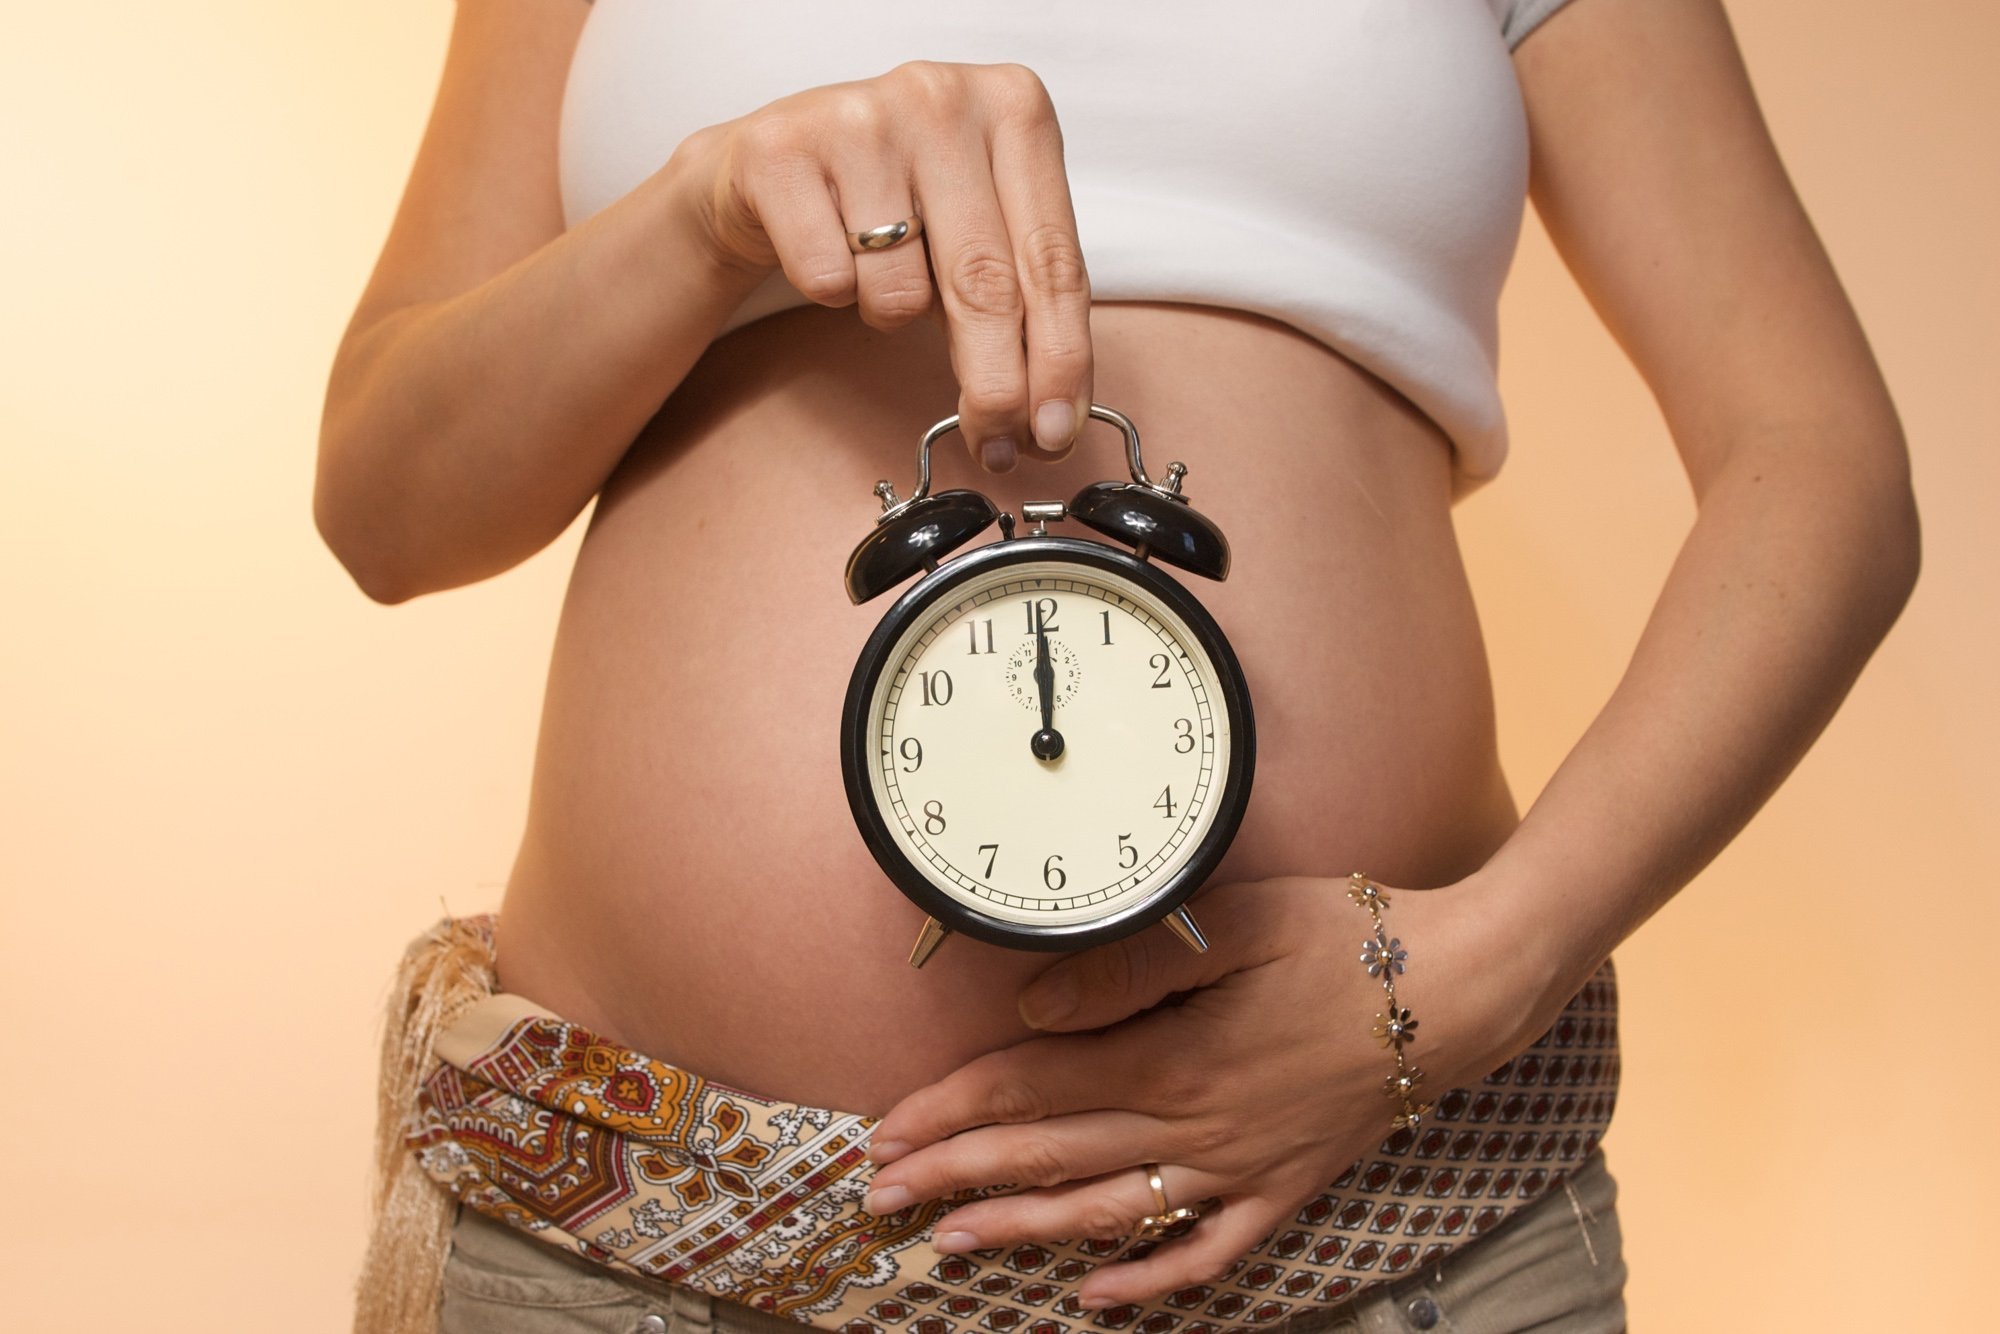 Роды 15 минут. Картинки беременных женщин. Беременный живот и часы.